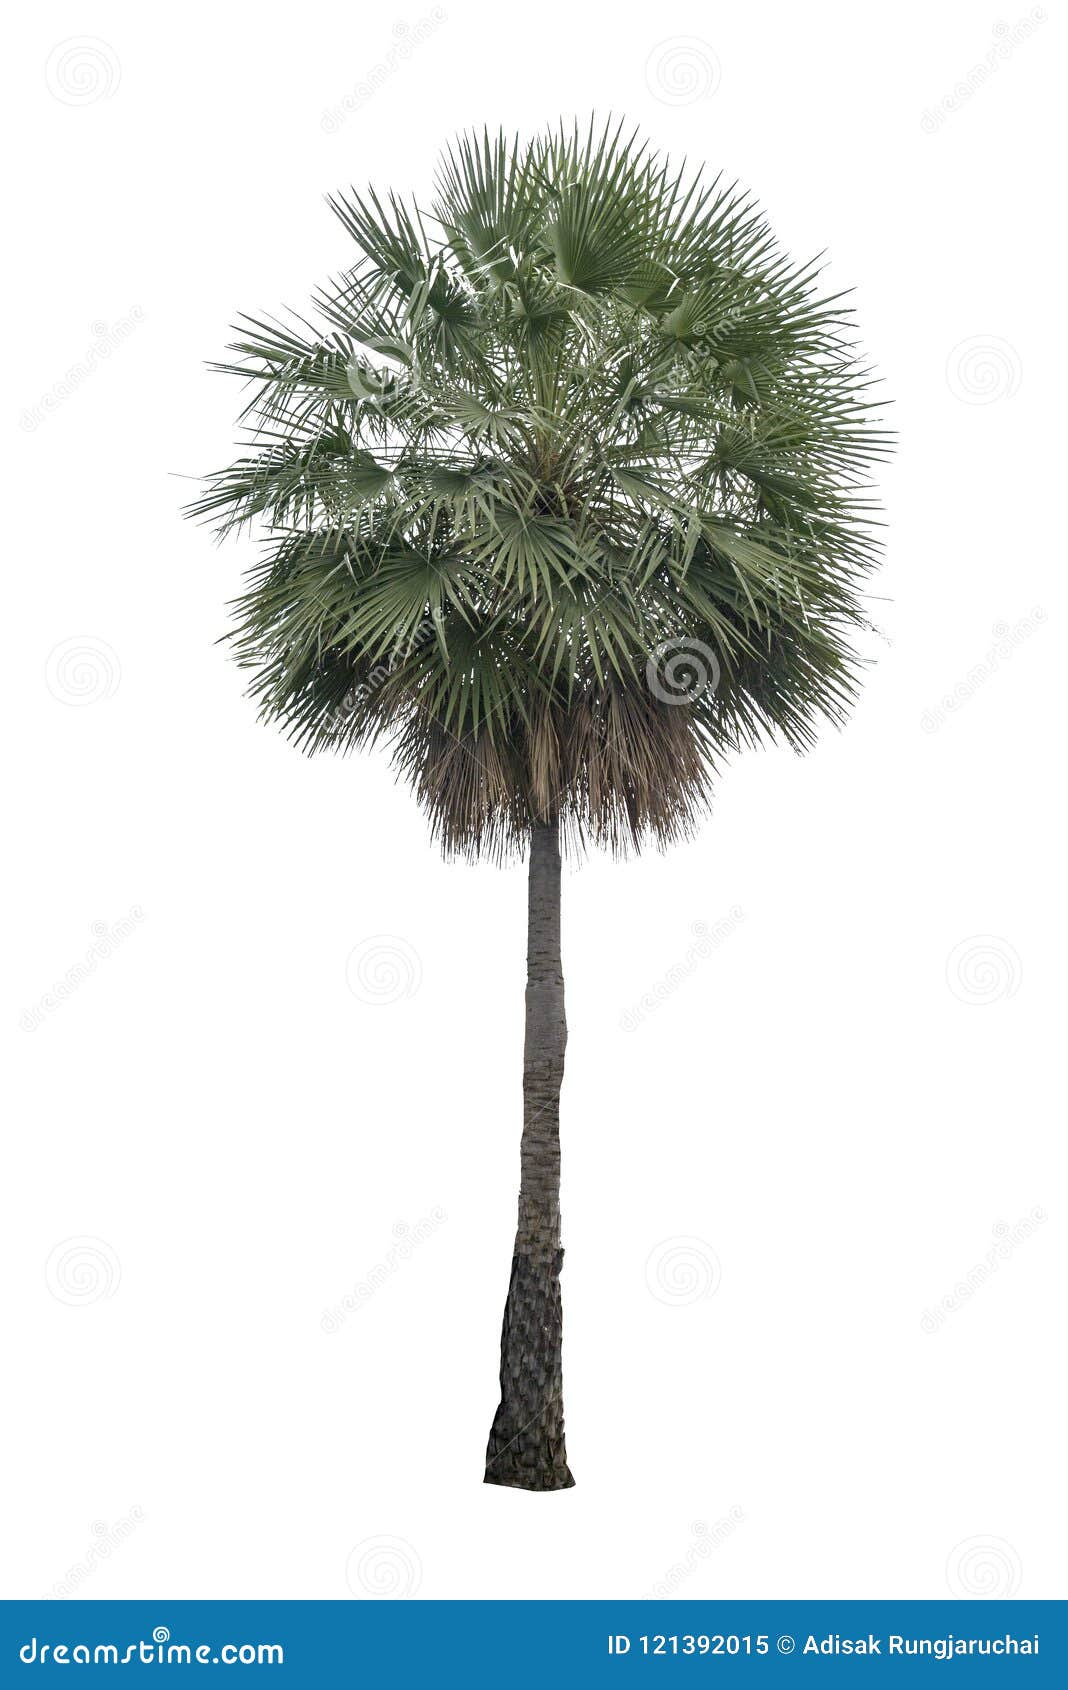 Washington Palm Tree Isolated on White BackgroundWashington Palm Tree ...